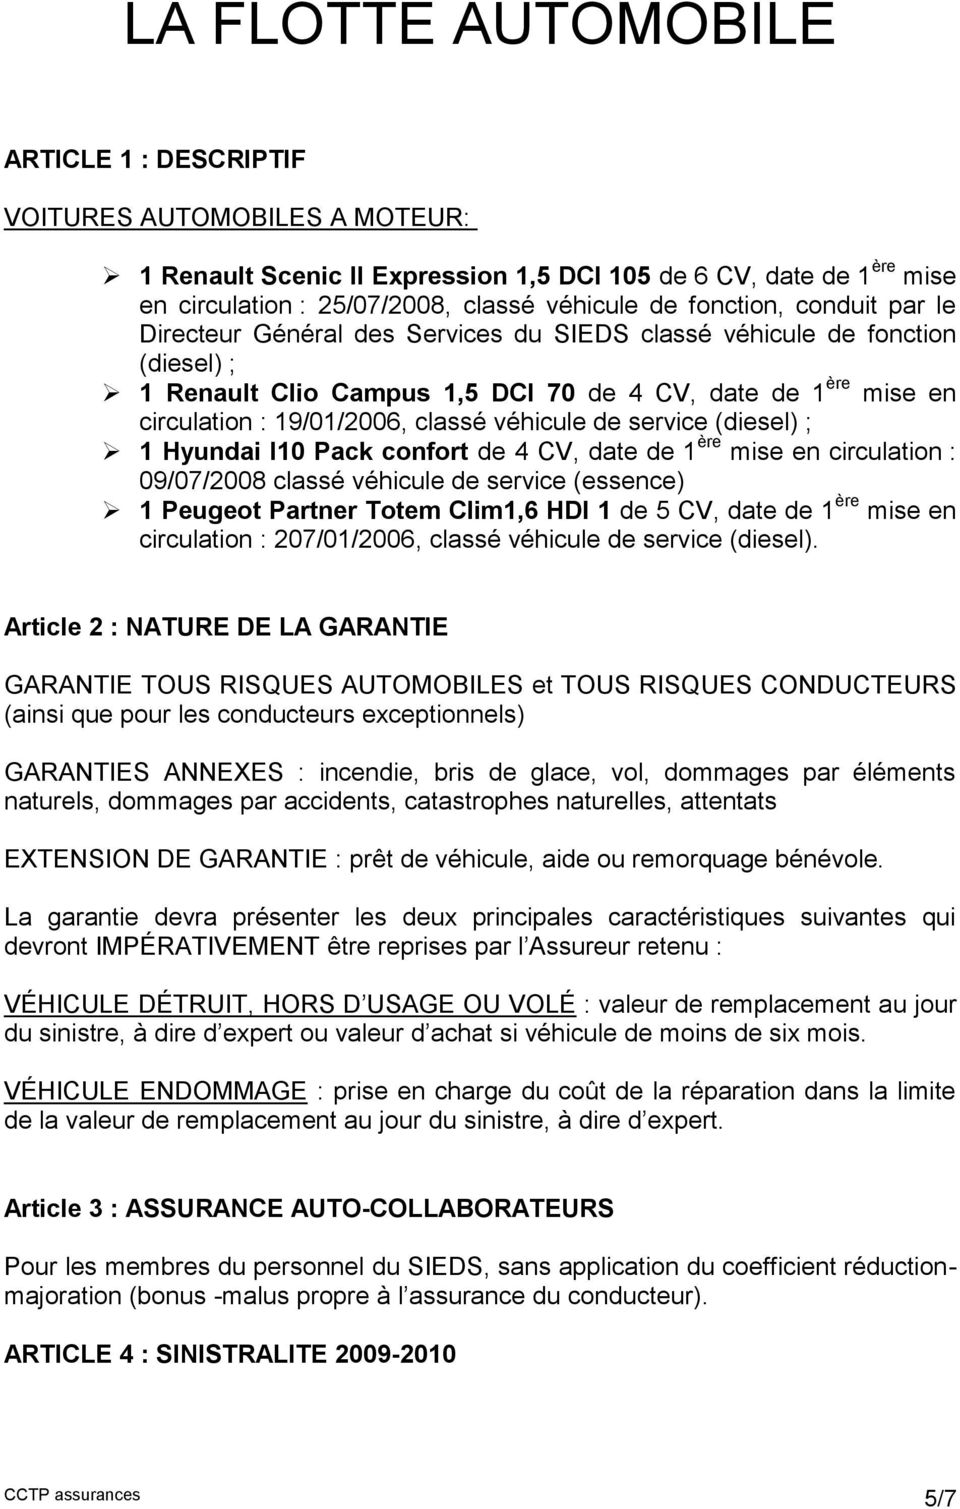 classé véhicule de service (diesel) ; 1 Hyundai I10 Pack confort de 4 CV, date de 1 ère mise en circulation : 09/07/2008 classé véhicule de service (essence) 1 Peugeot Partner Totem Clim1,6 HDI 1 de